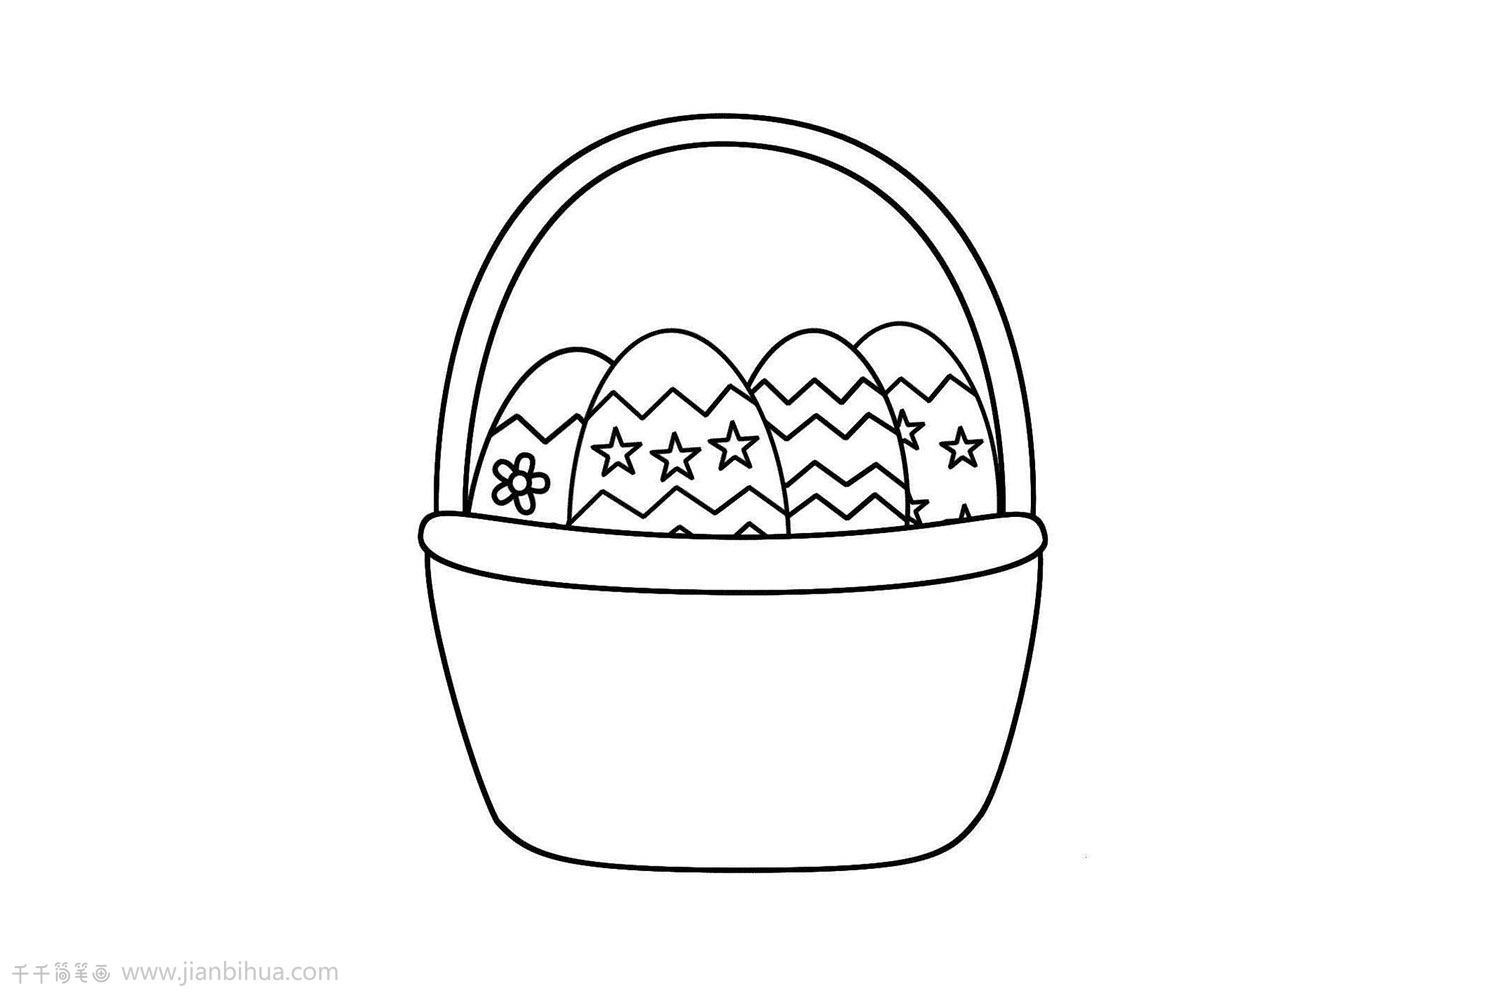 最漂亮鸡蛋手绘步骤画法图片 咿咿呀呀儿童手工网